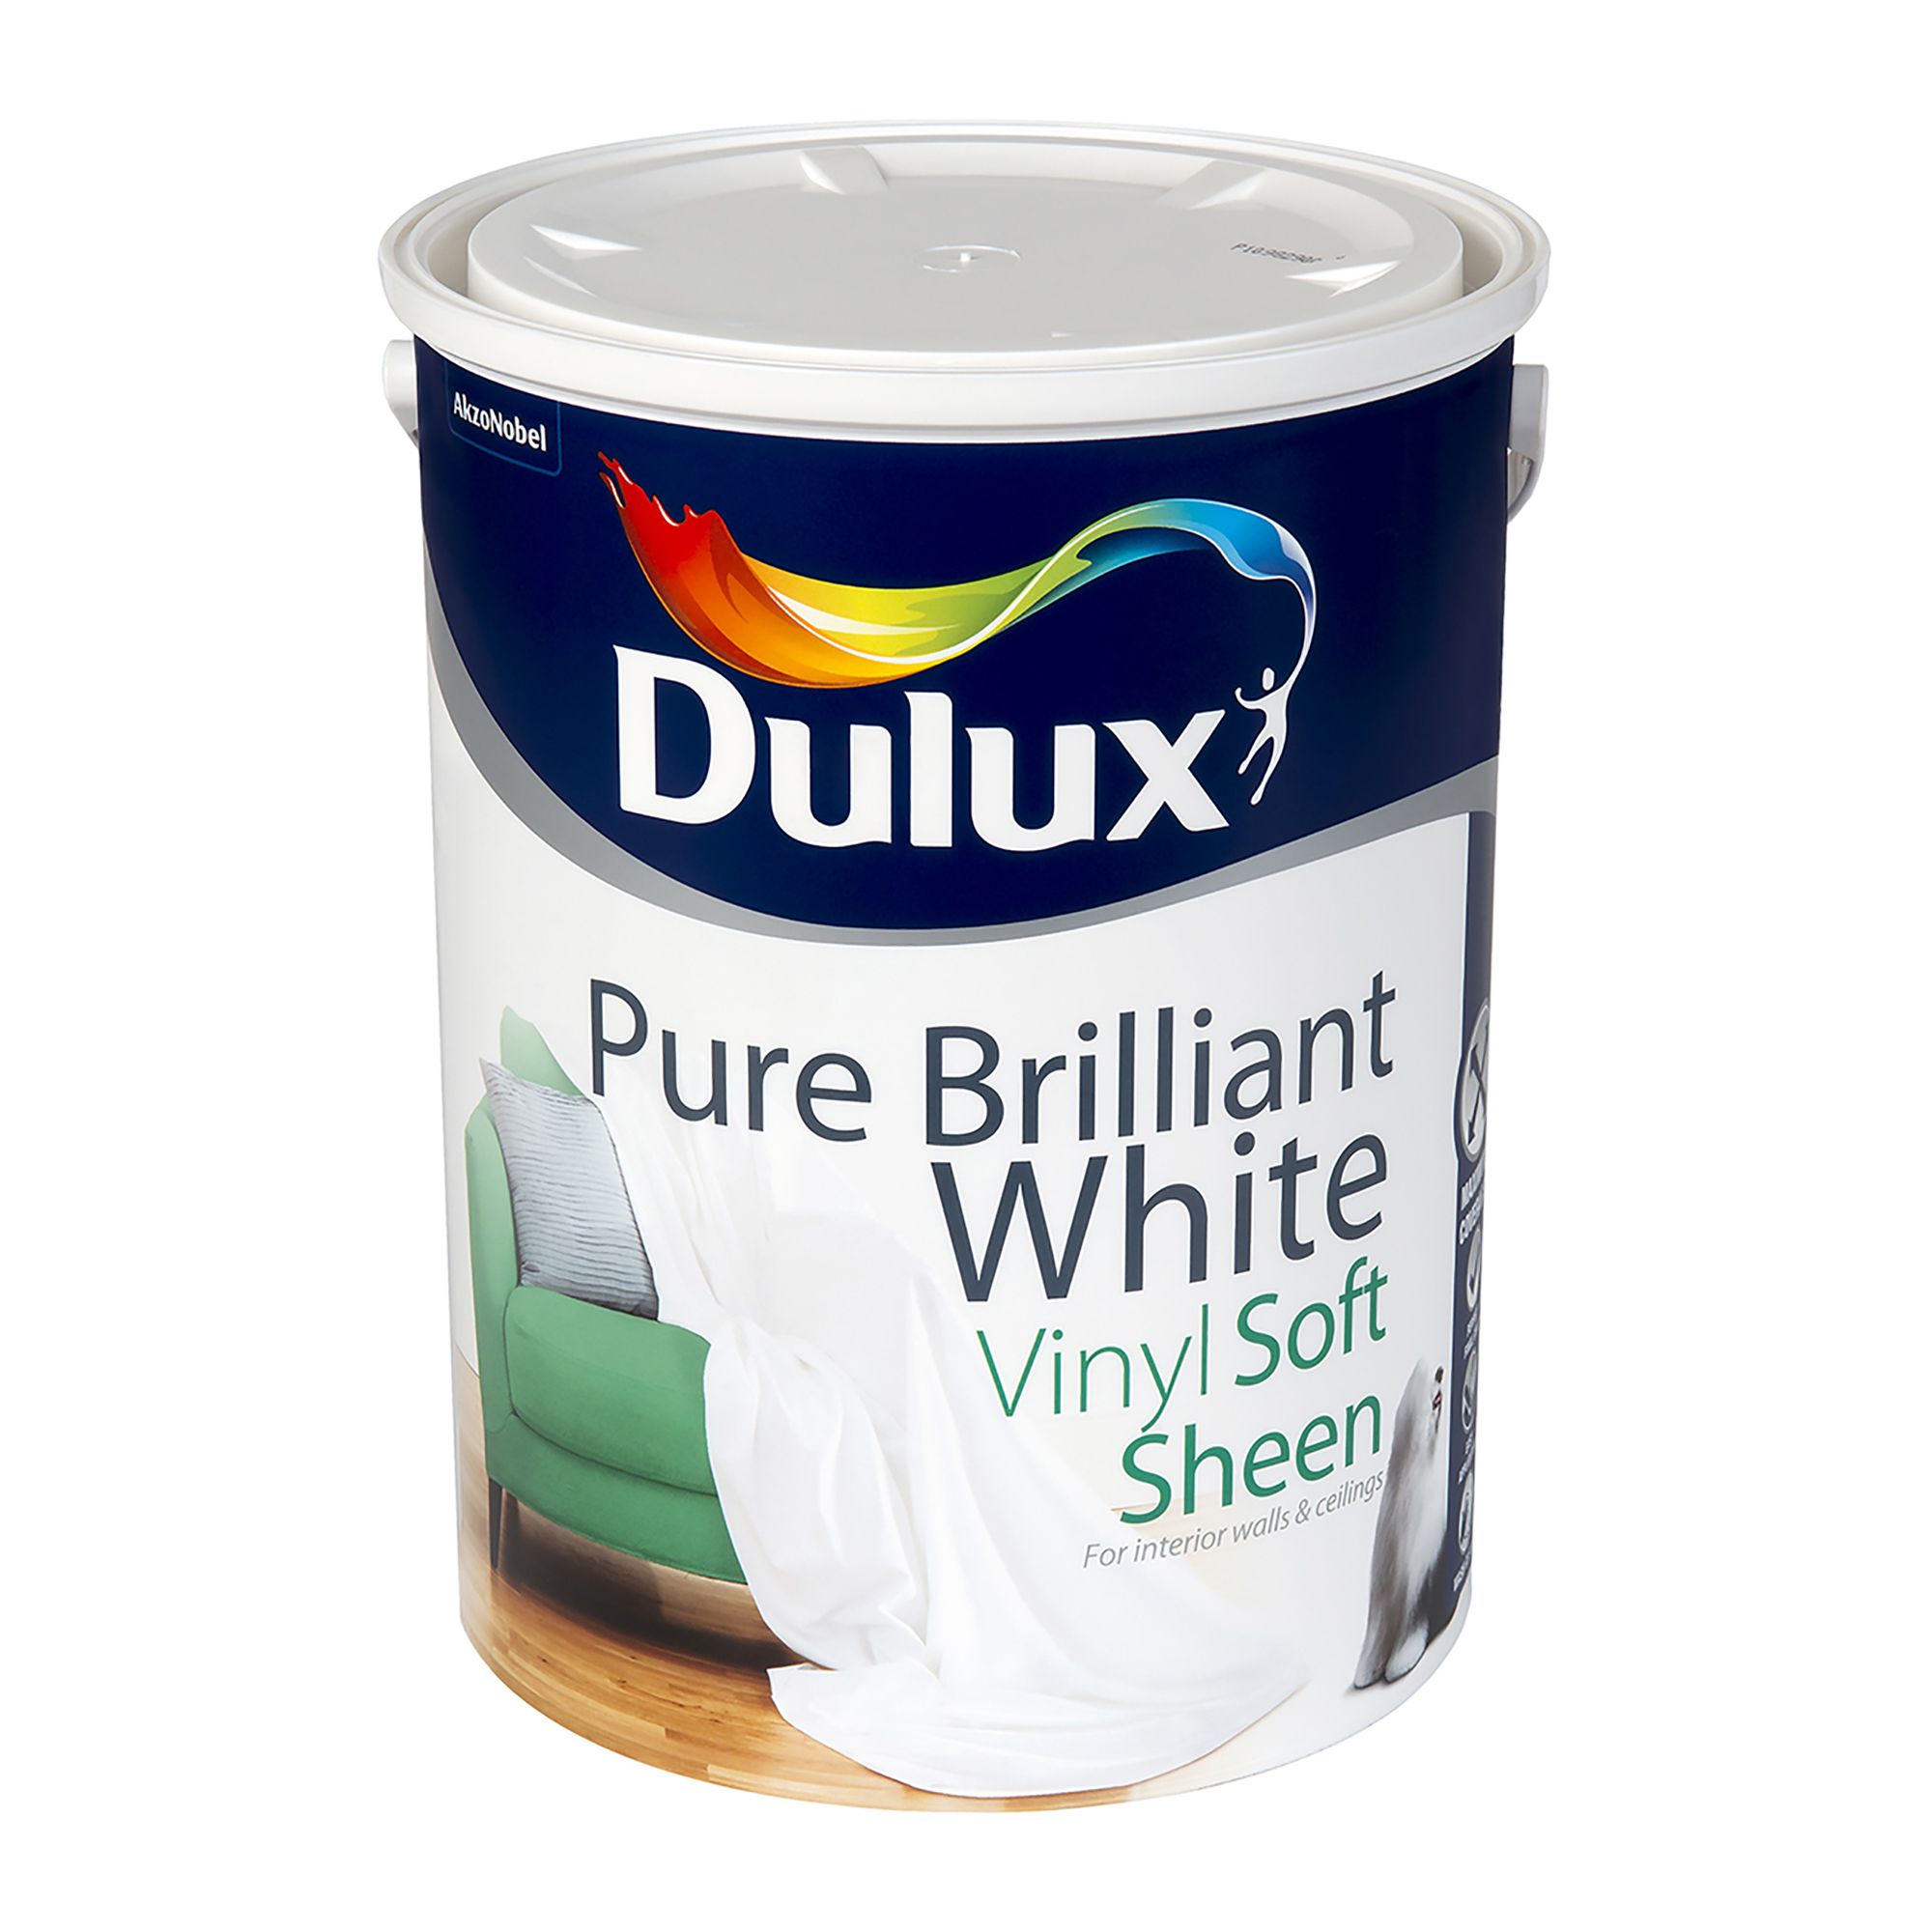 Dulux White Soft sheen Emulsion paint, 5L